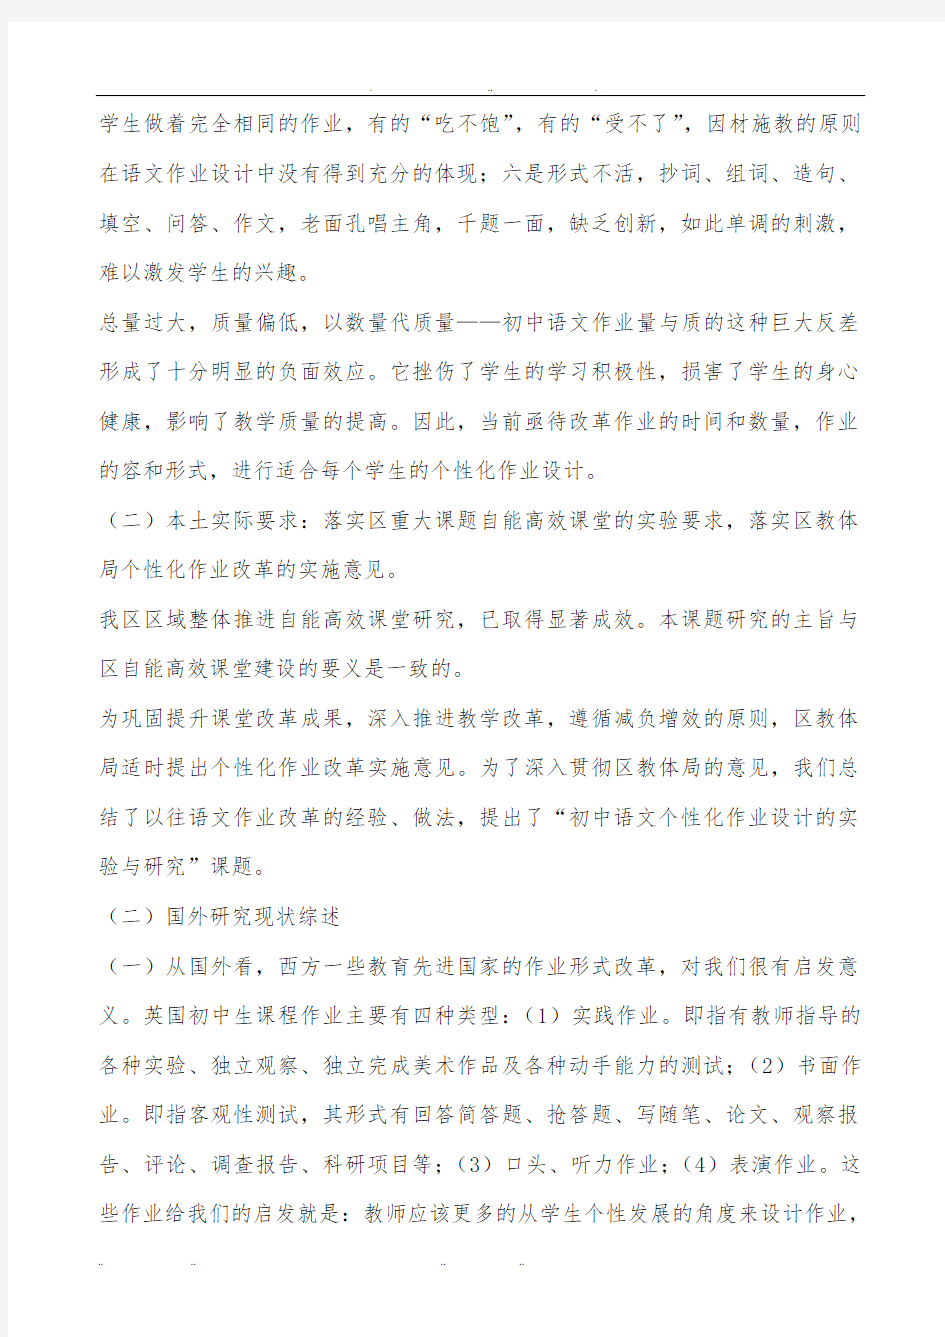 初中语文个性化作业设计的实验与研究课题开题报告